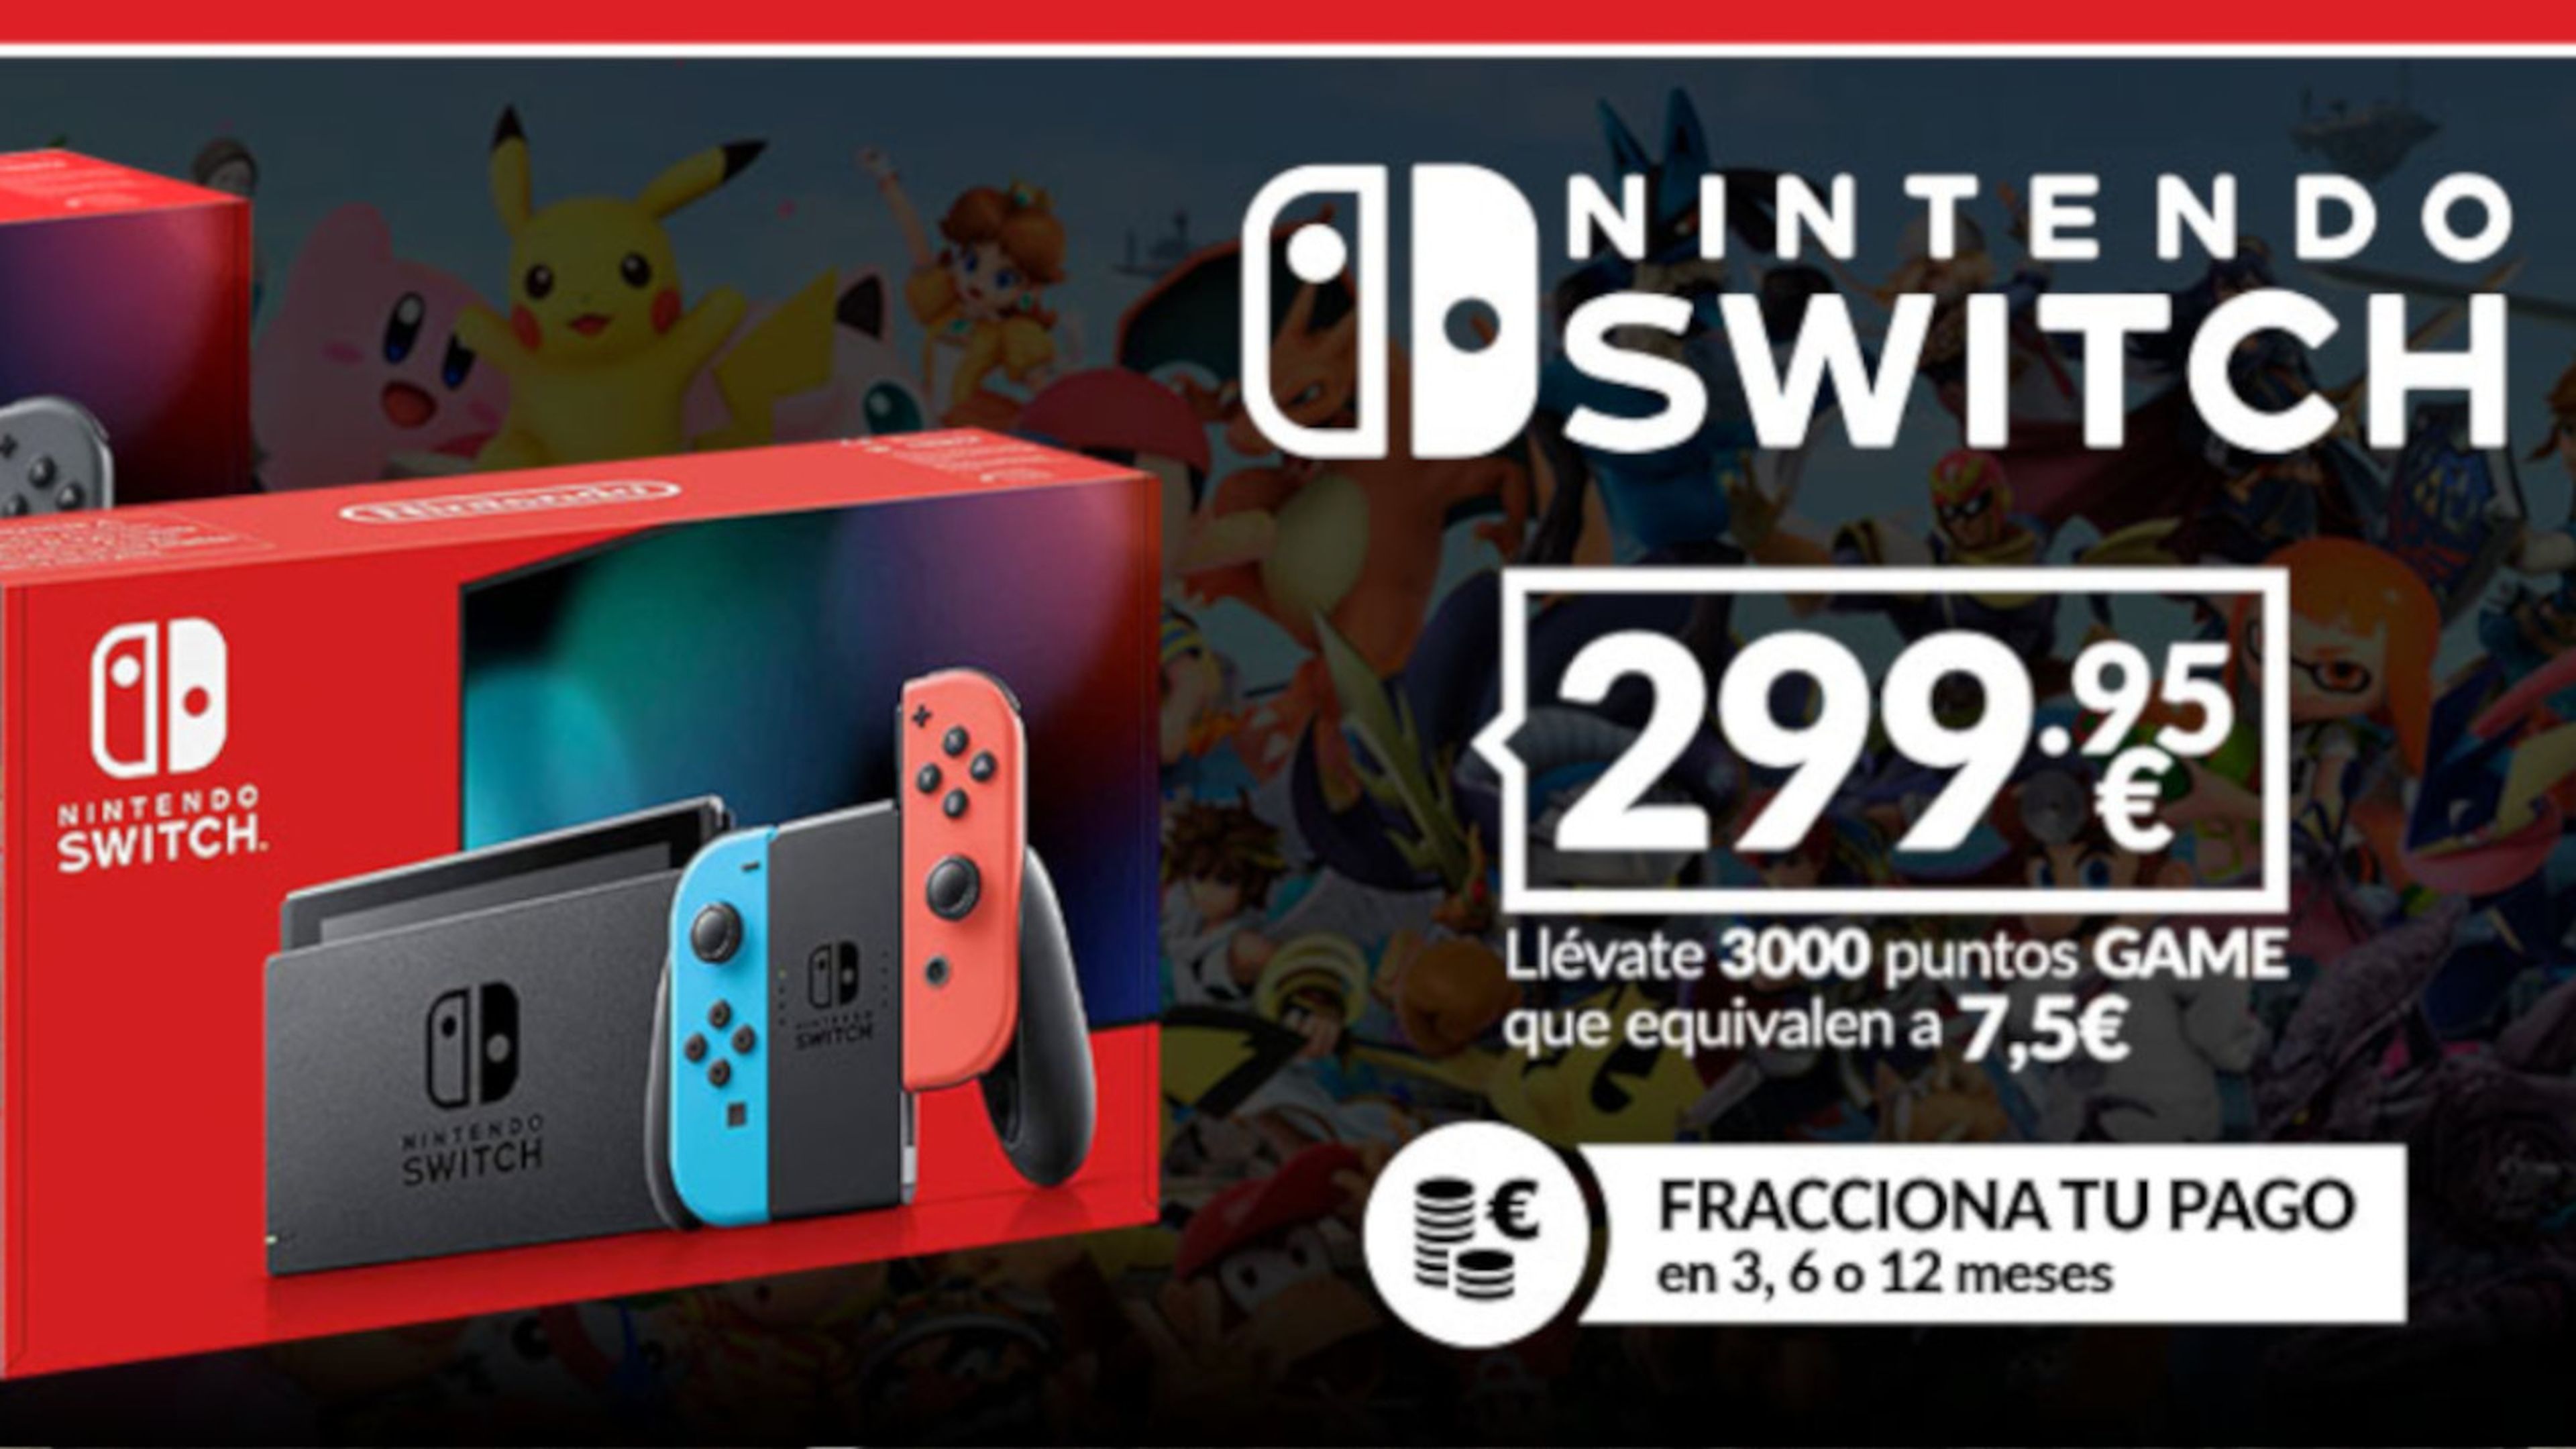 packs de Nintendo Switch disponibles GAME tras la bajada de precio permanente | Hobby Consolas